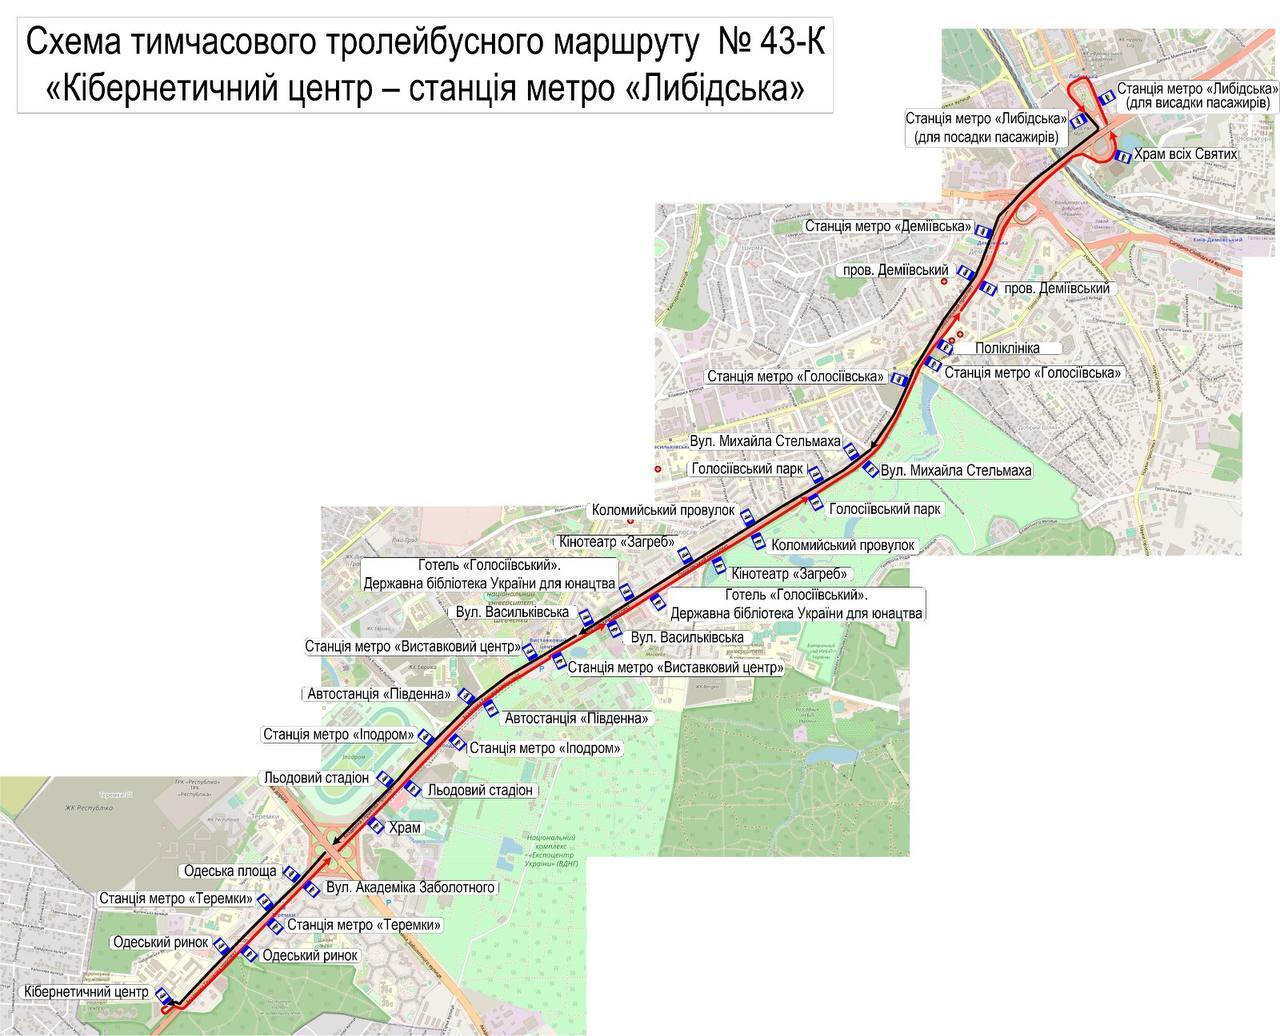 Nastąpiła dekompresja: w Kijowie pilnie zamknięto ruch pociągów metra na części niebieskiej linii. Wideo